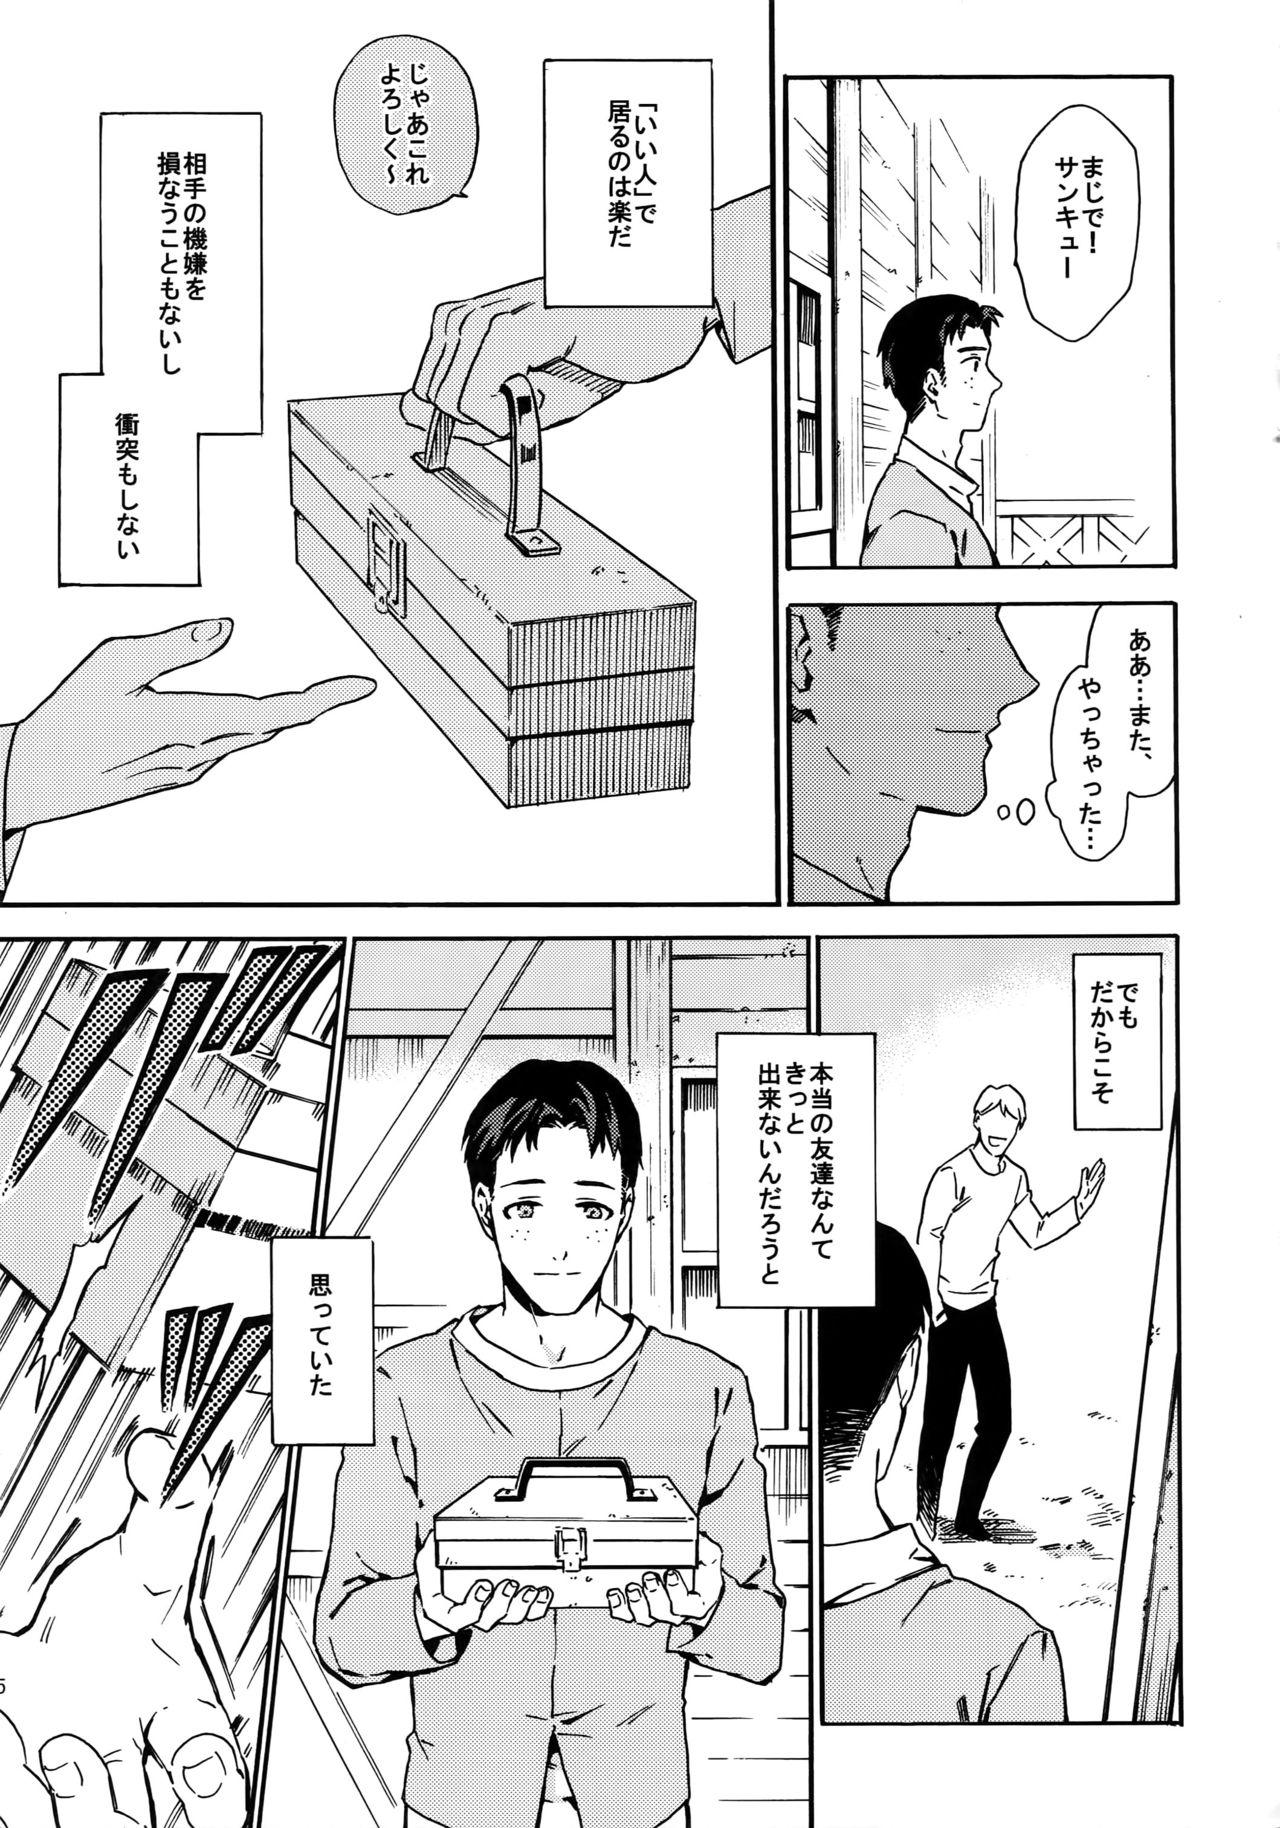 Realitykings Koufuku Paradox - Shingeki no kyojin Stranger - Page 4